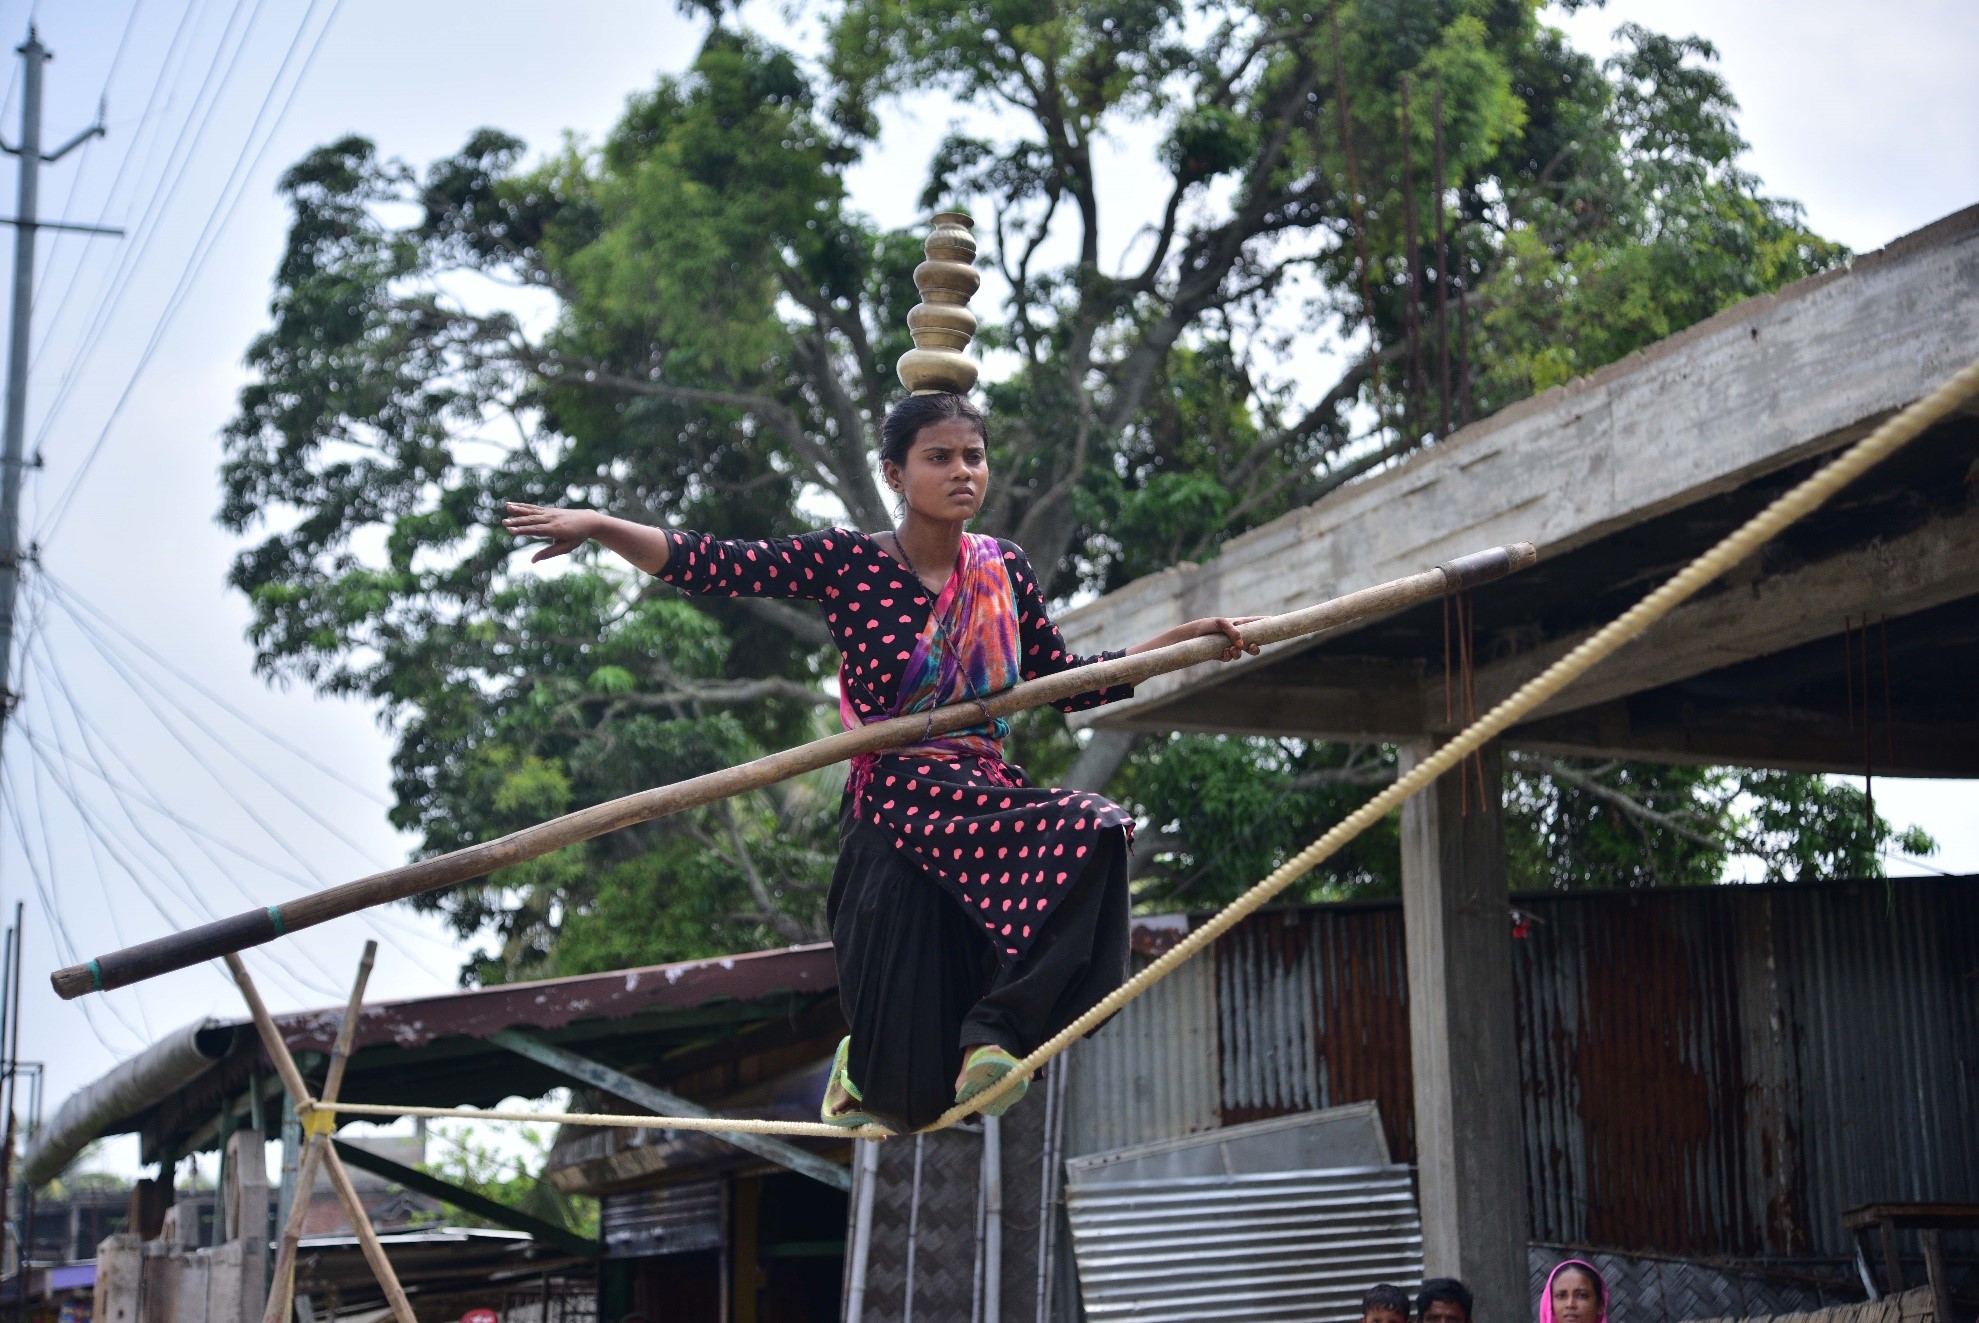 بھارت کی شمال مشرقی ریاست آسام کے ضلع ناگاؤں میں اسٹریٹ شو کے دوران ایک لڑکی رسی پر توازن برقرارر کھنے کا مظاہرہ کر رہی ہے۔(شِنہوا)